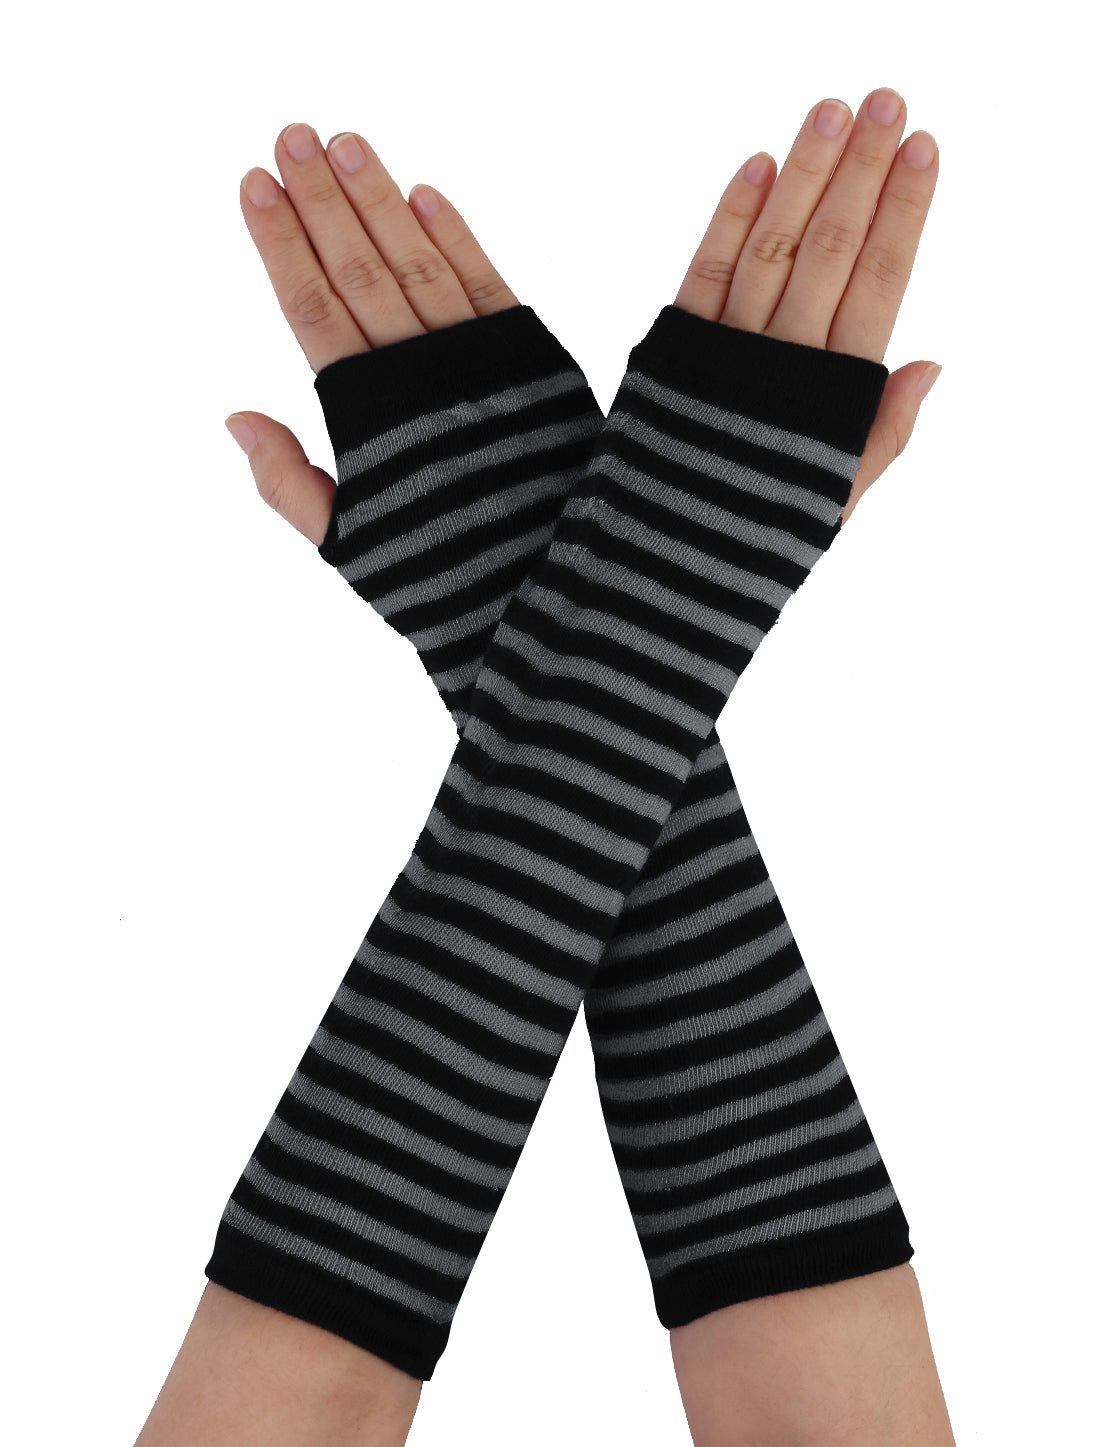 Allegra K Winter Fingerless Thumbhole Elastic Long Knitted Party Costume Gloves